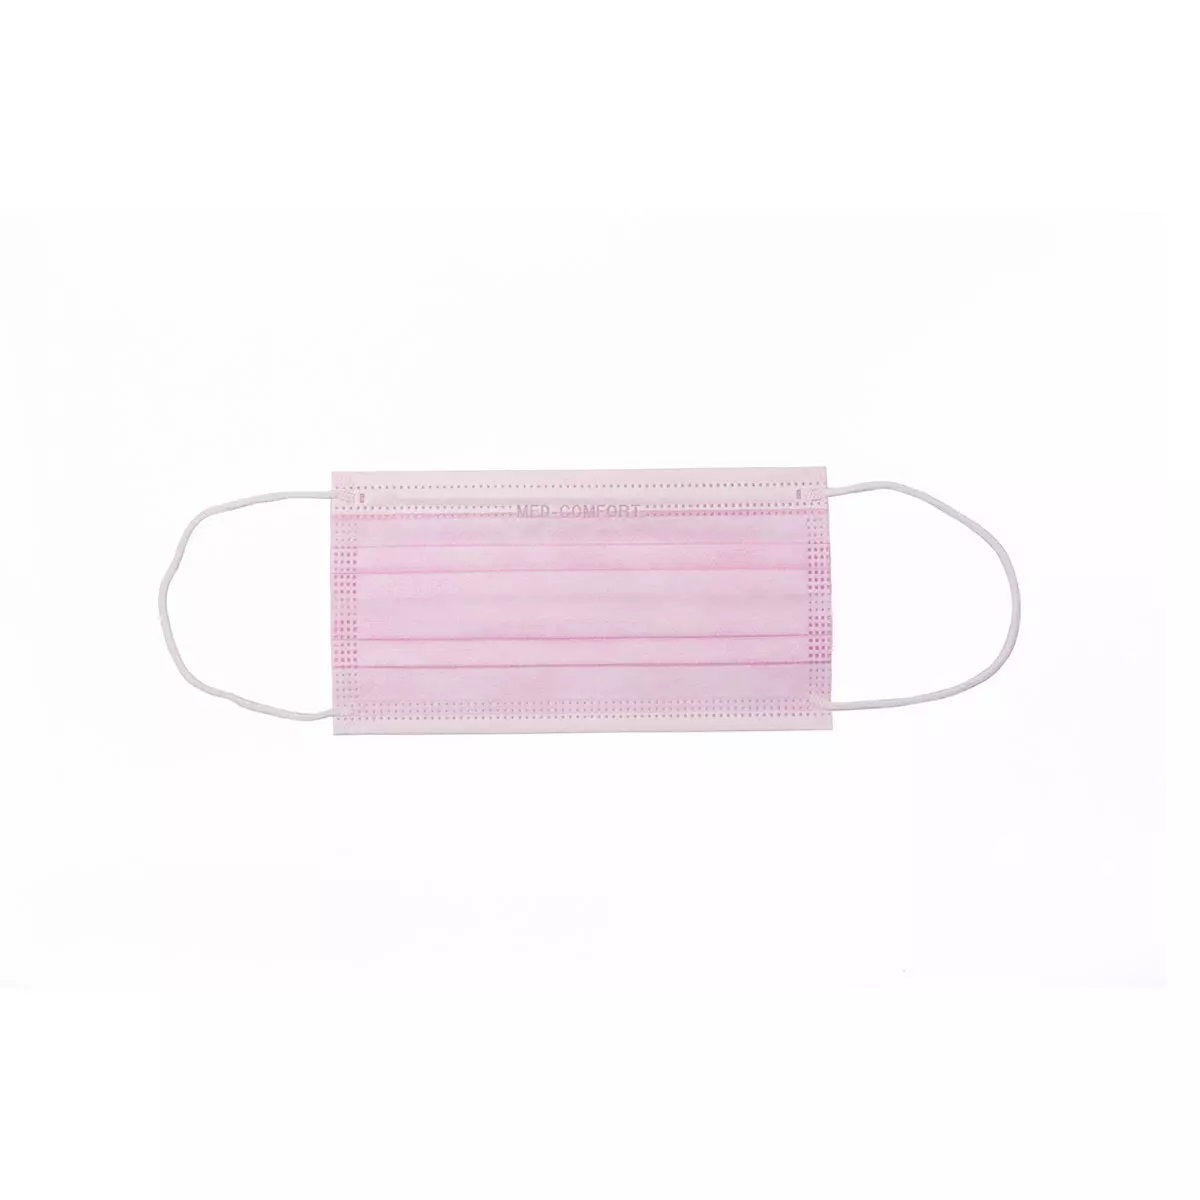 AMPRI-Einweg-Mundschutz, MED COMFORT, 3-lagig, runde Elastikbänder, VE = Pkg. á 50 Stück, pink